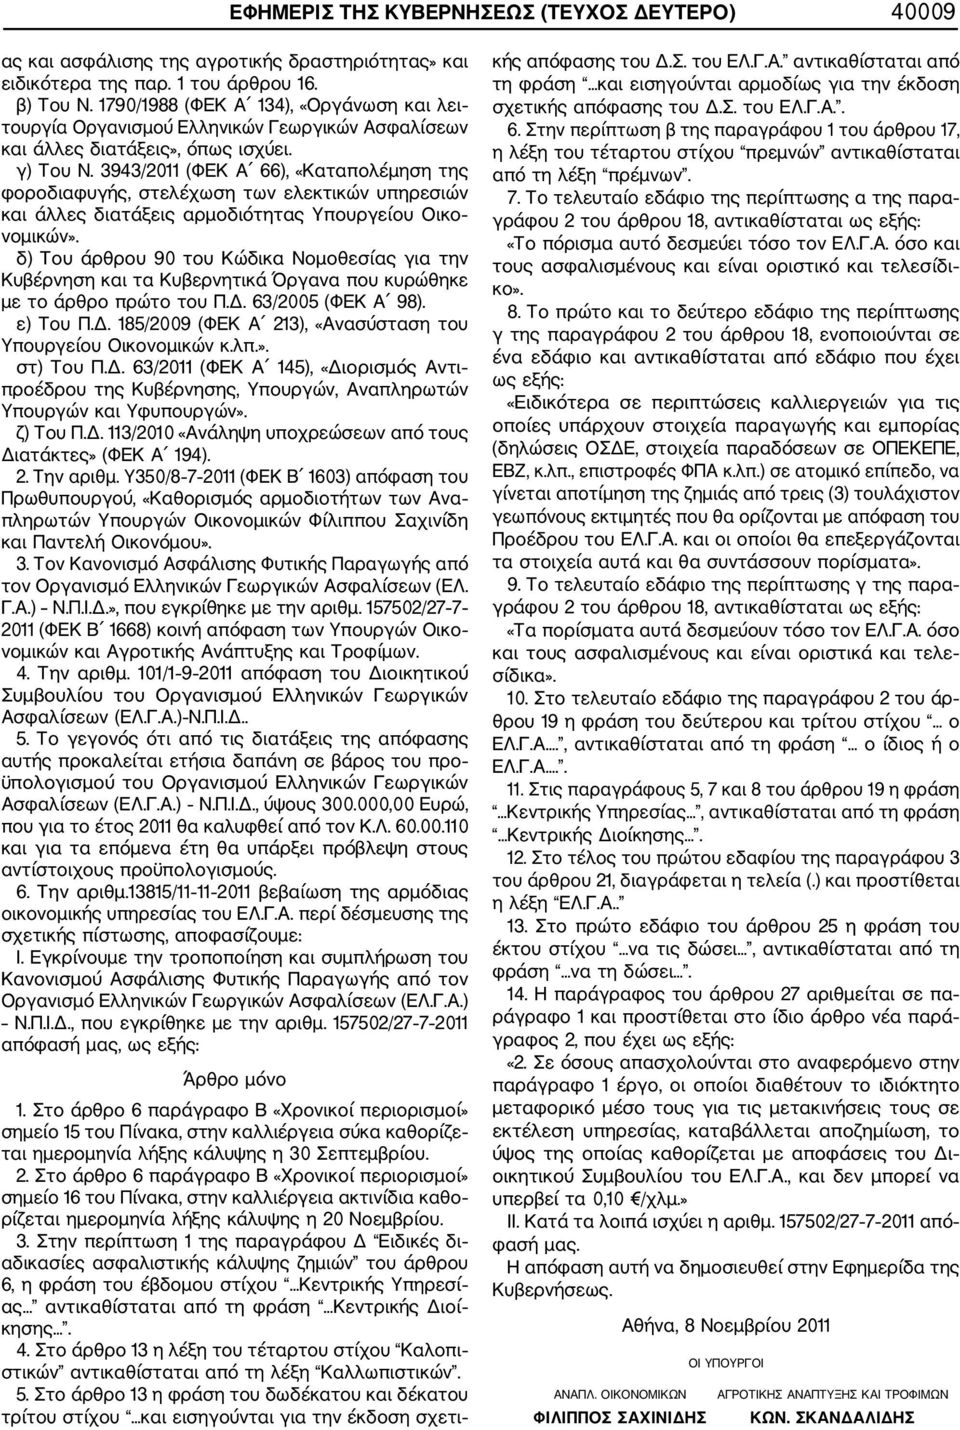 3943/2011 (ΦΕΚ Α 66), «Καταπολέμηση της φοροδιαφυγής, στελέχωση των ελεκτικών υπηρεσιών και άλλες διατάξεις αρμοδιότητας Υπουργείου Οικο νομικών».